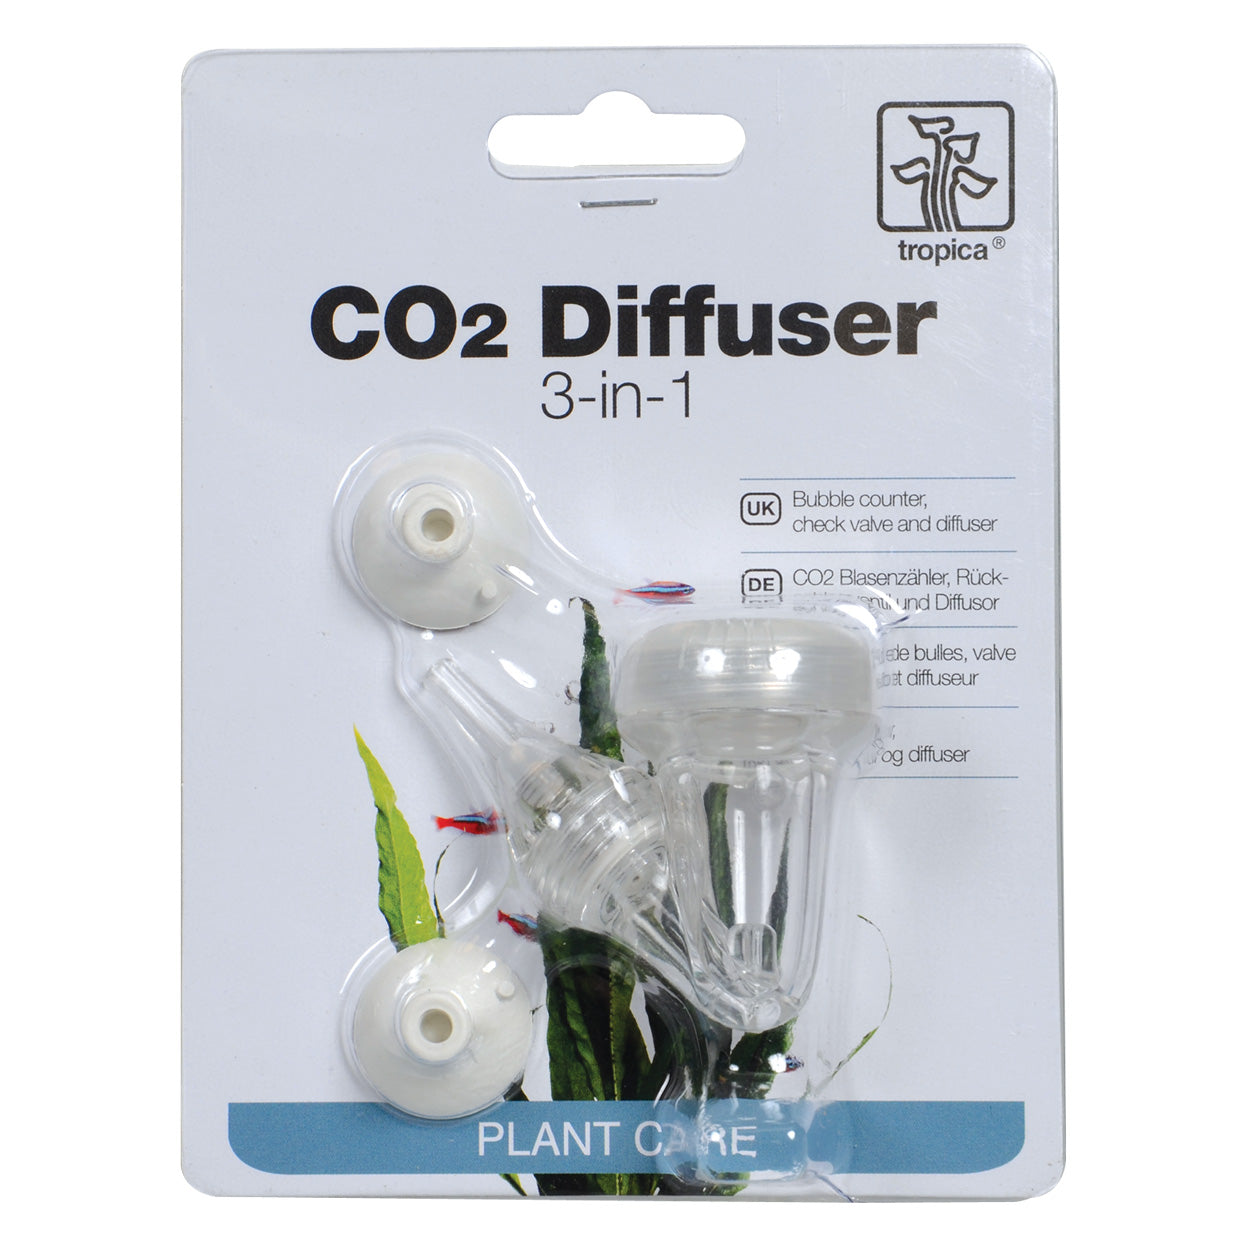 CO2 Diffuser (3-in-1)